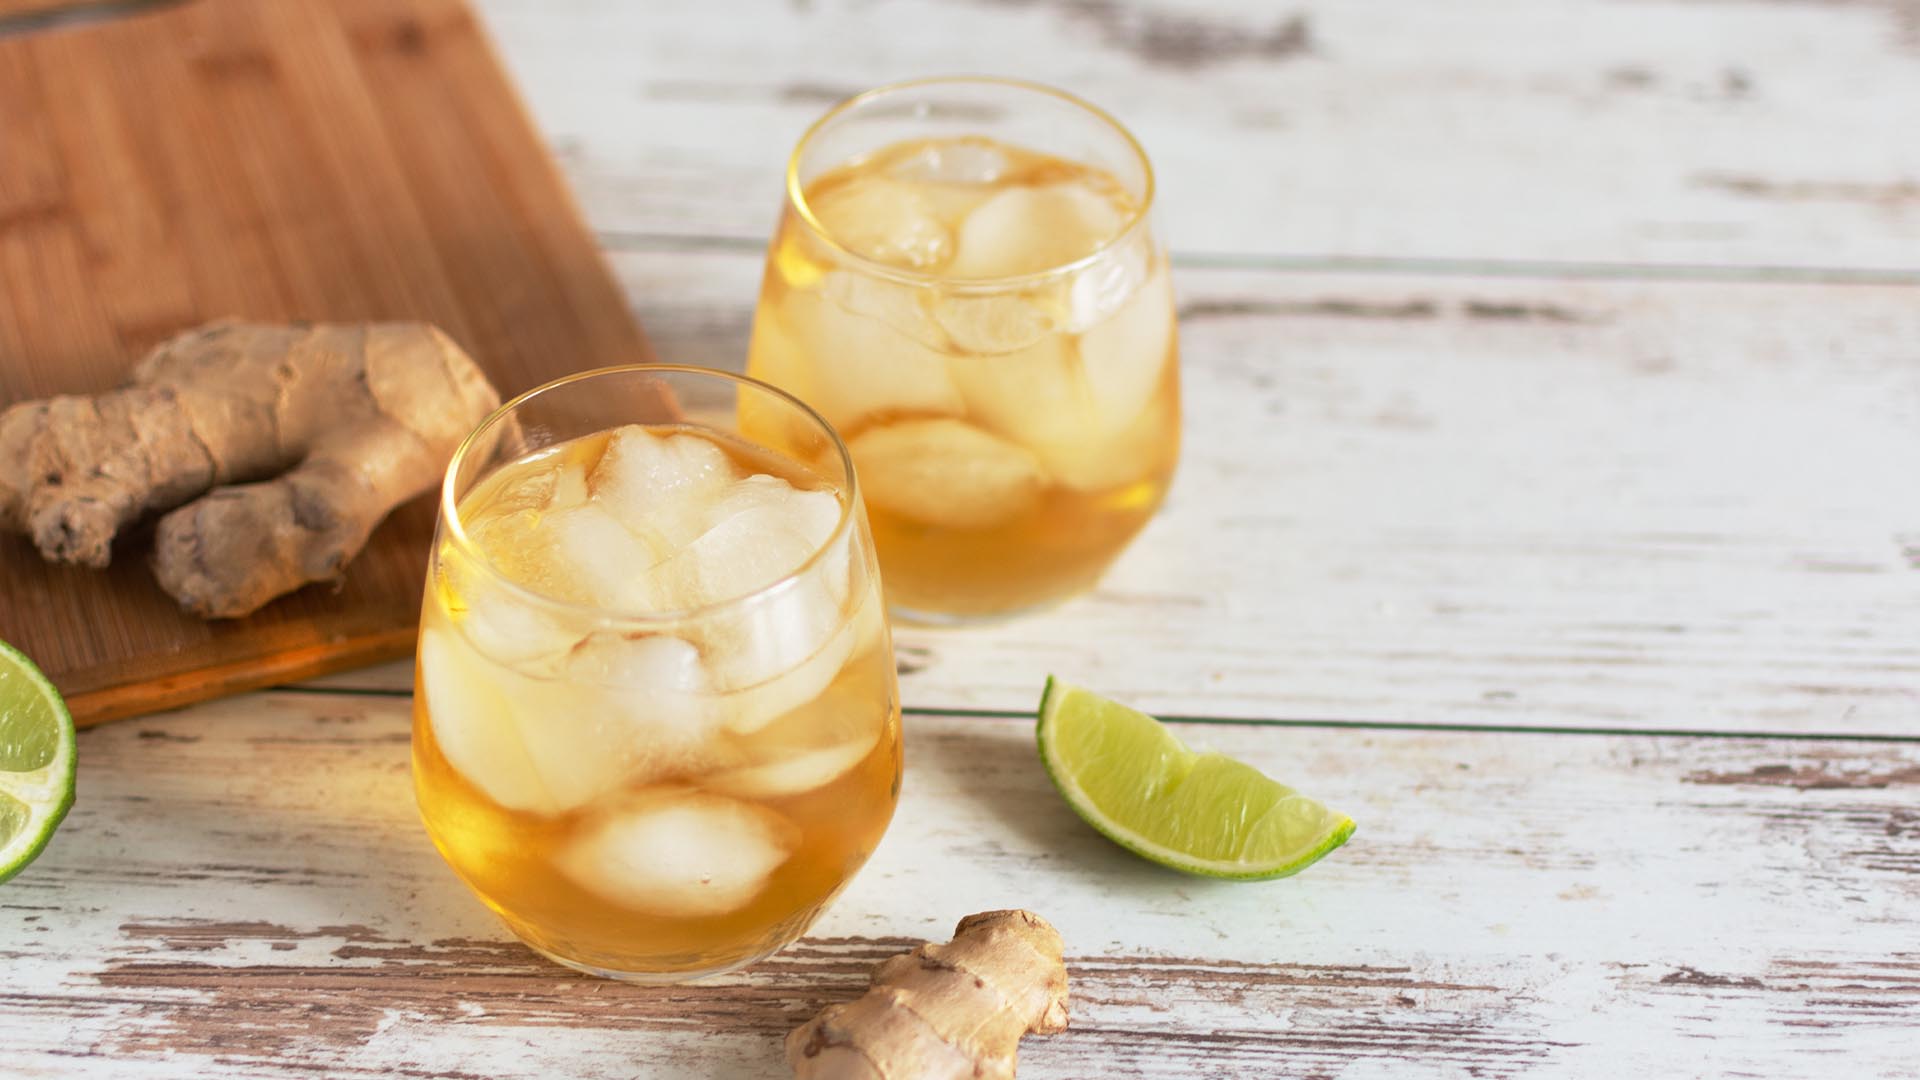 Ginger lemonade tea refreshment for summer